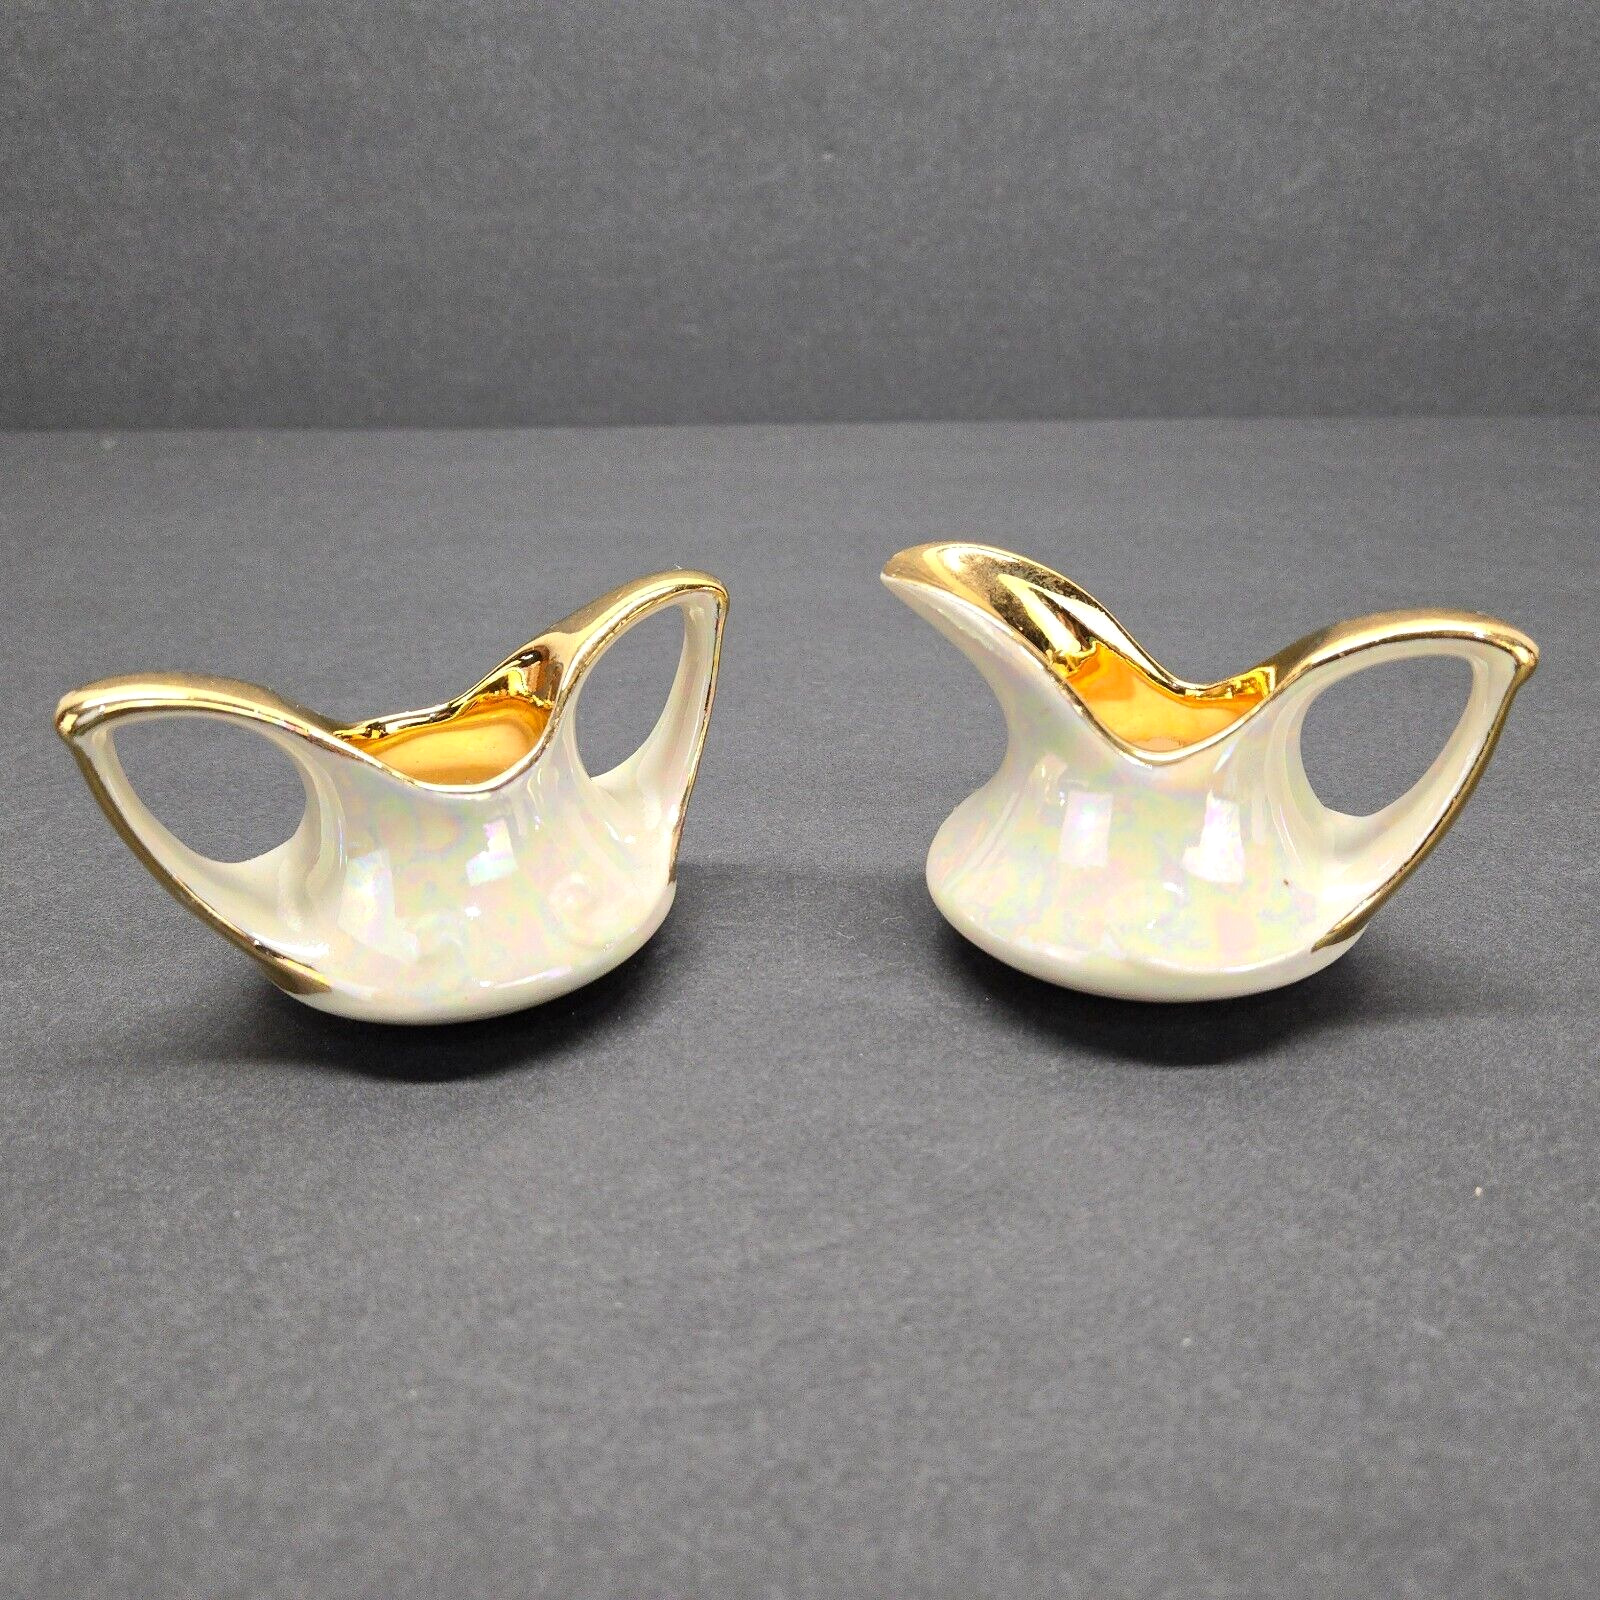 Vintage Pearl China Company Sugar Bowl Creamer Gold Tone Iridescent No Marks